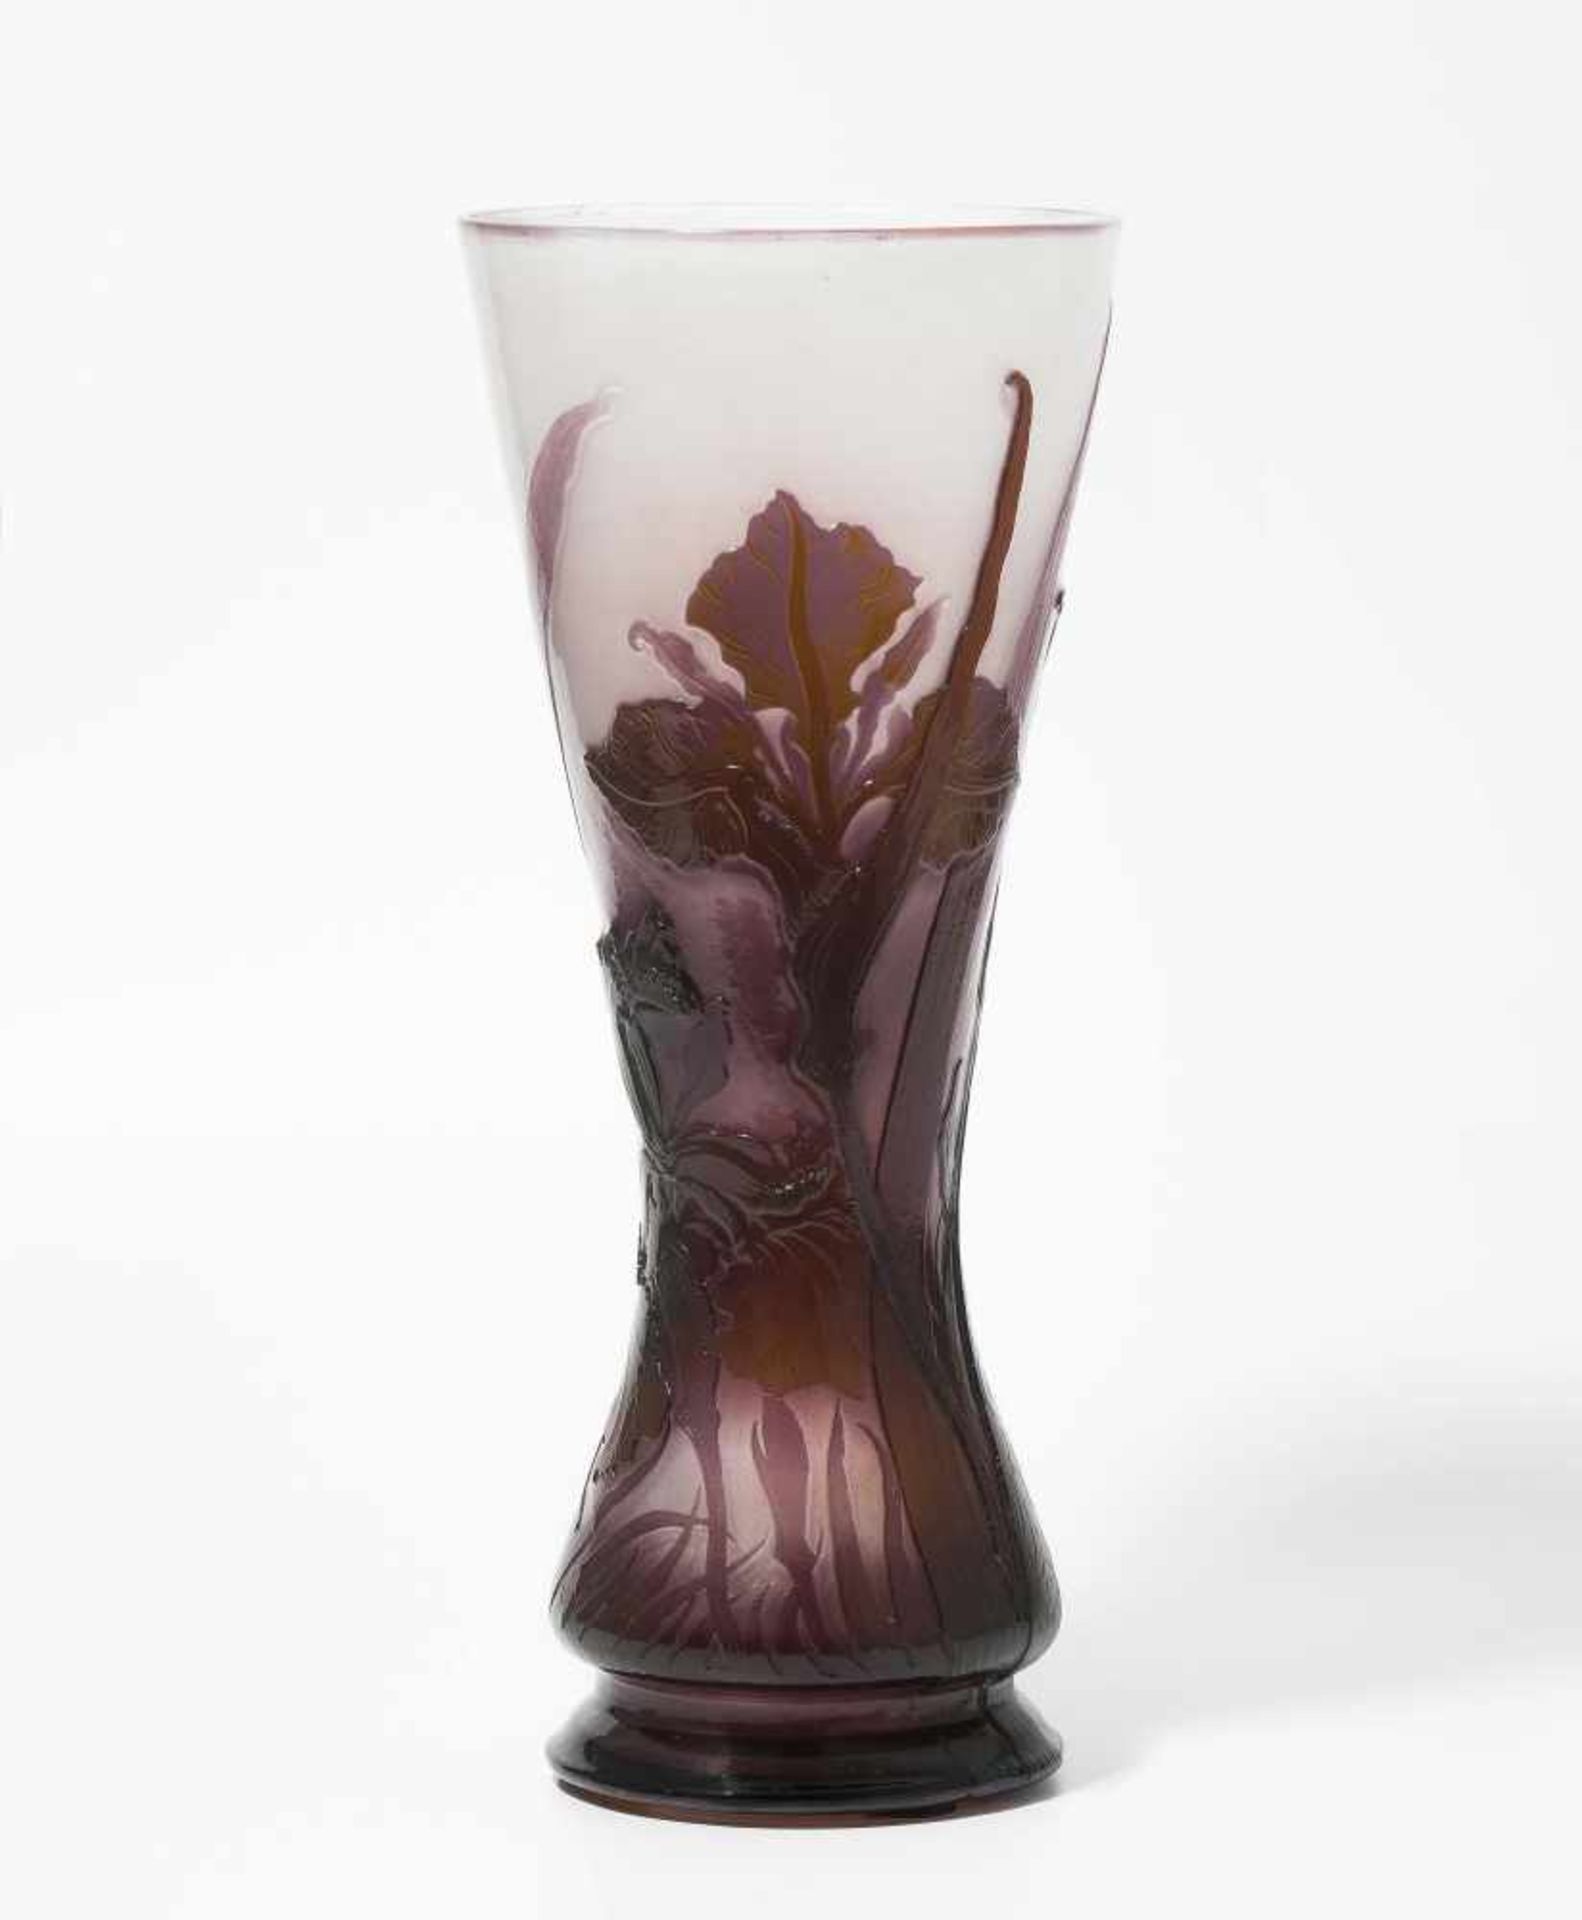 Emile GalléNancy, um 1900. Vase. Farbloses Glas, innen milchigweiss, aussen violett und grün